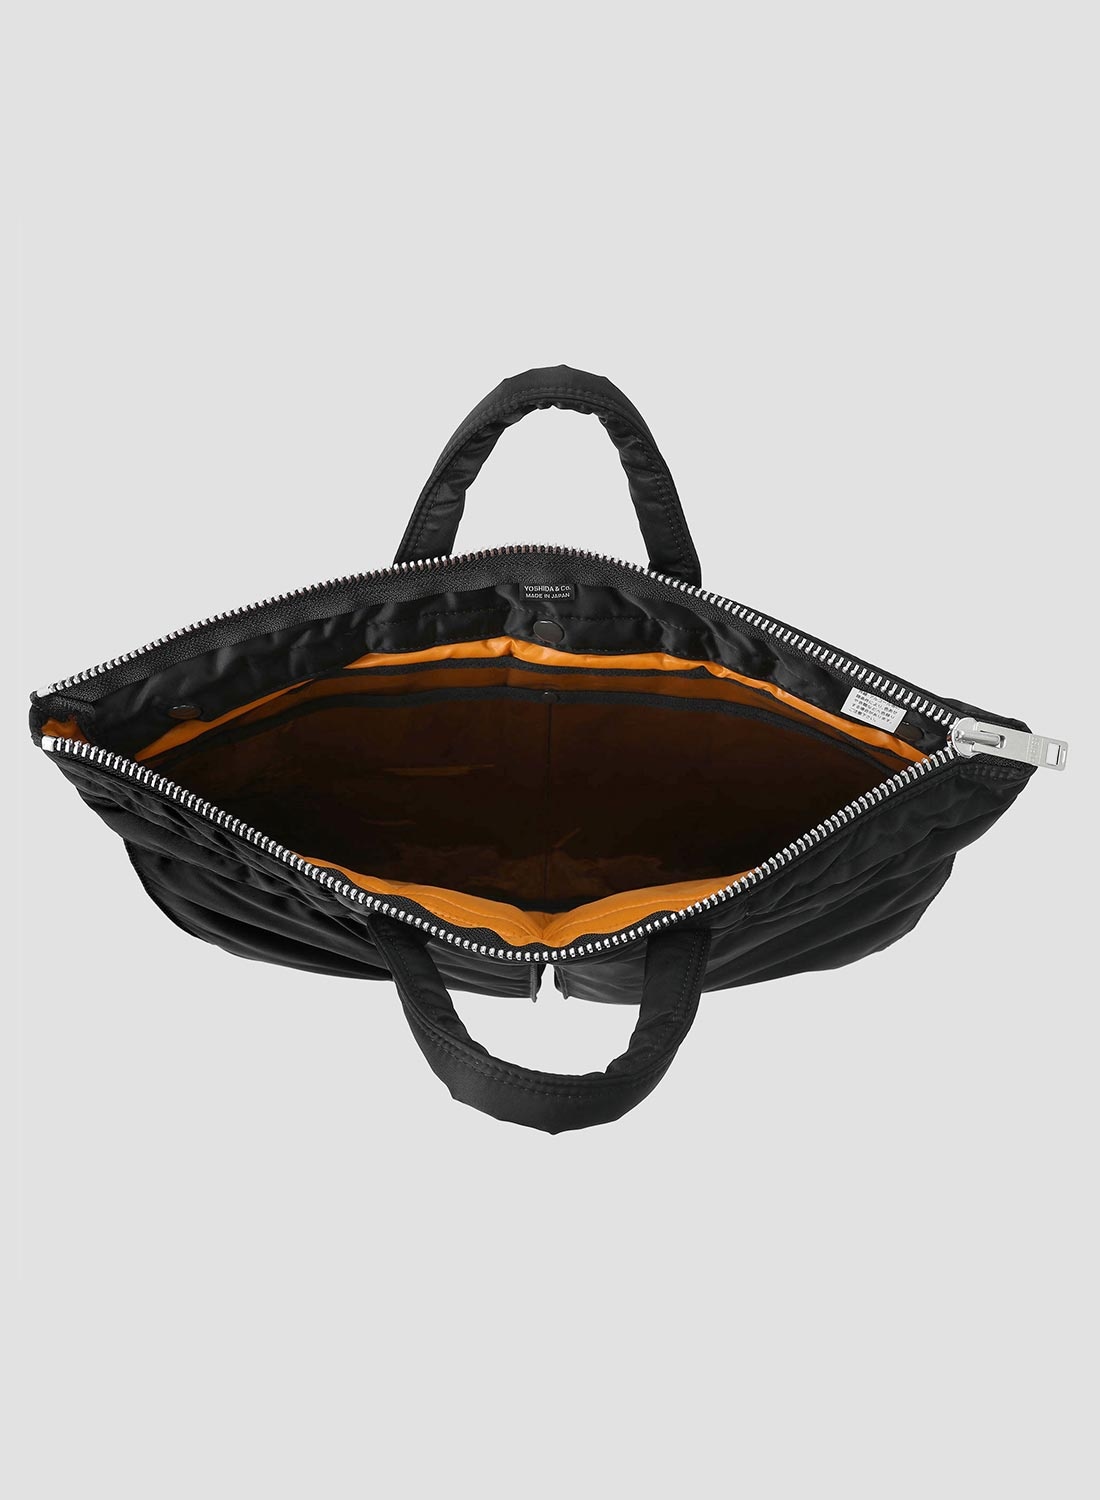 Porter-Yoshida & Co Tanker Short Helmet Bag Large in Black - 3